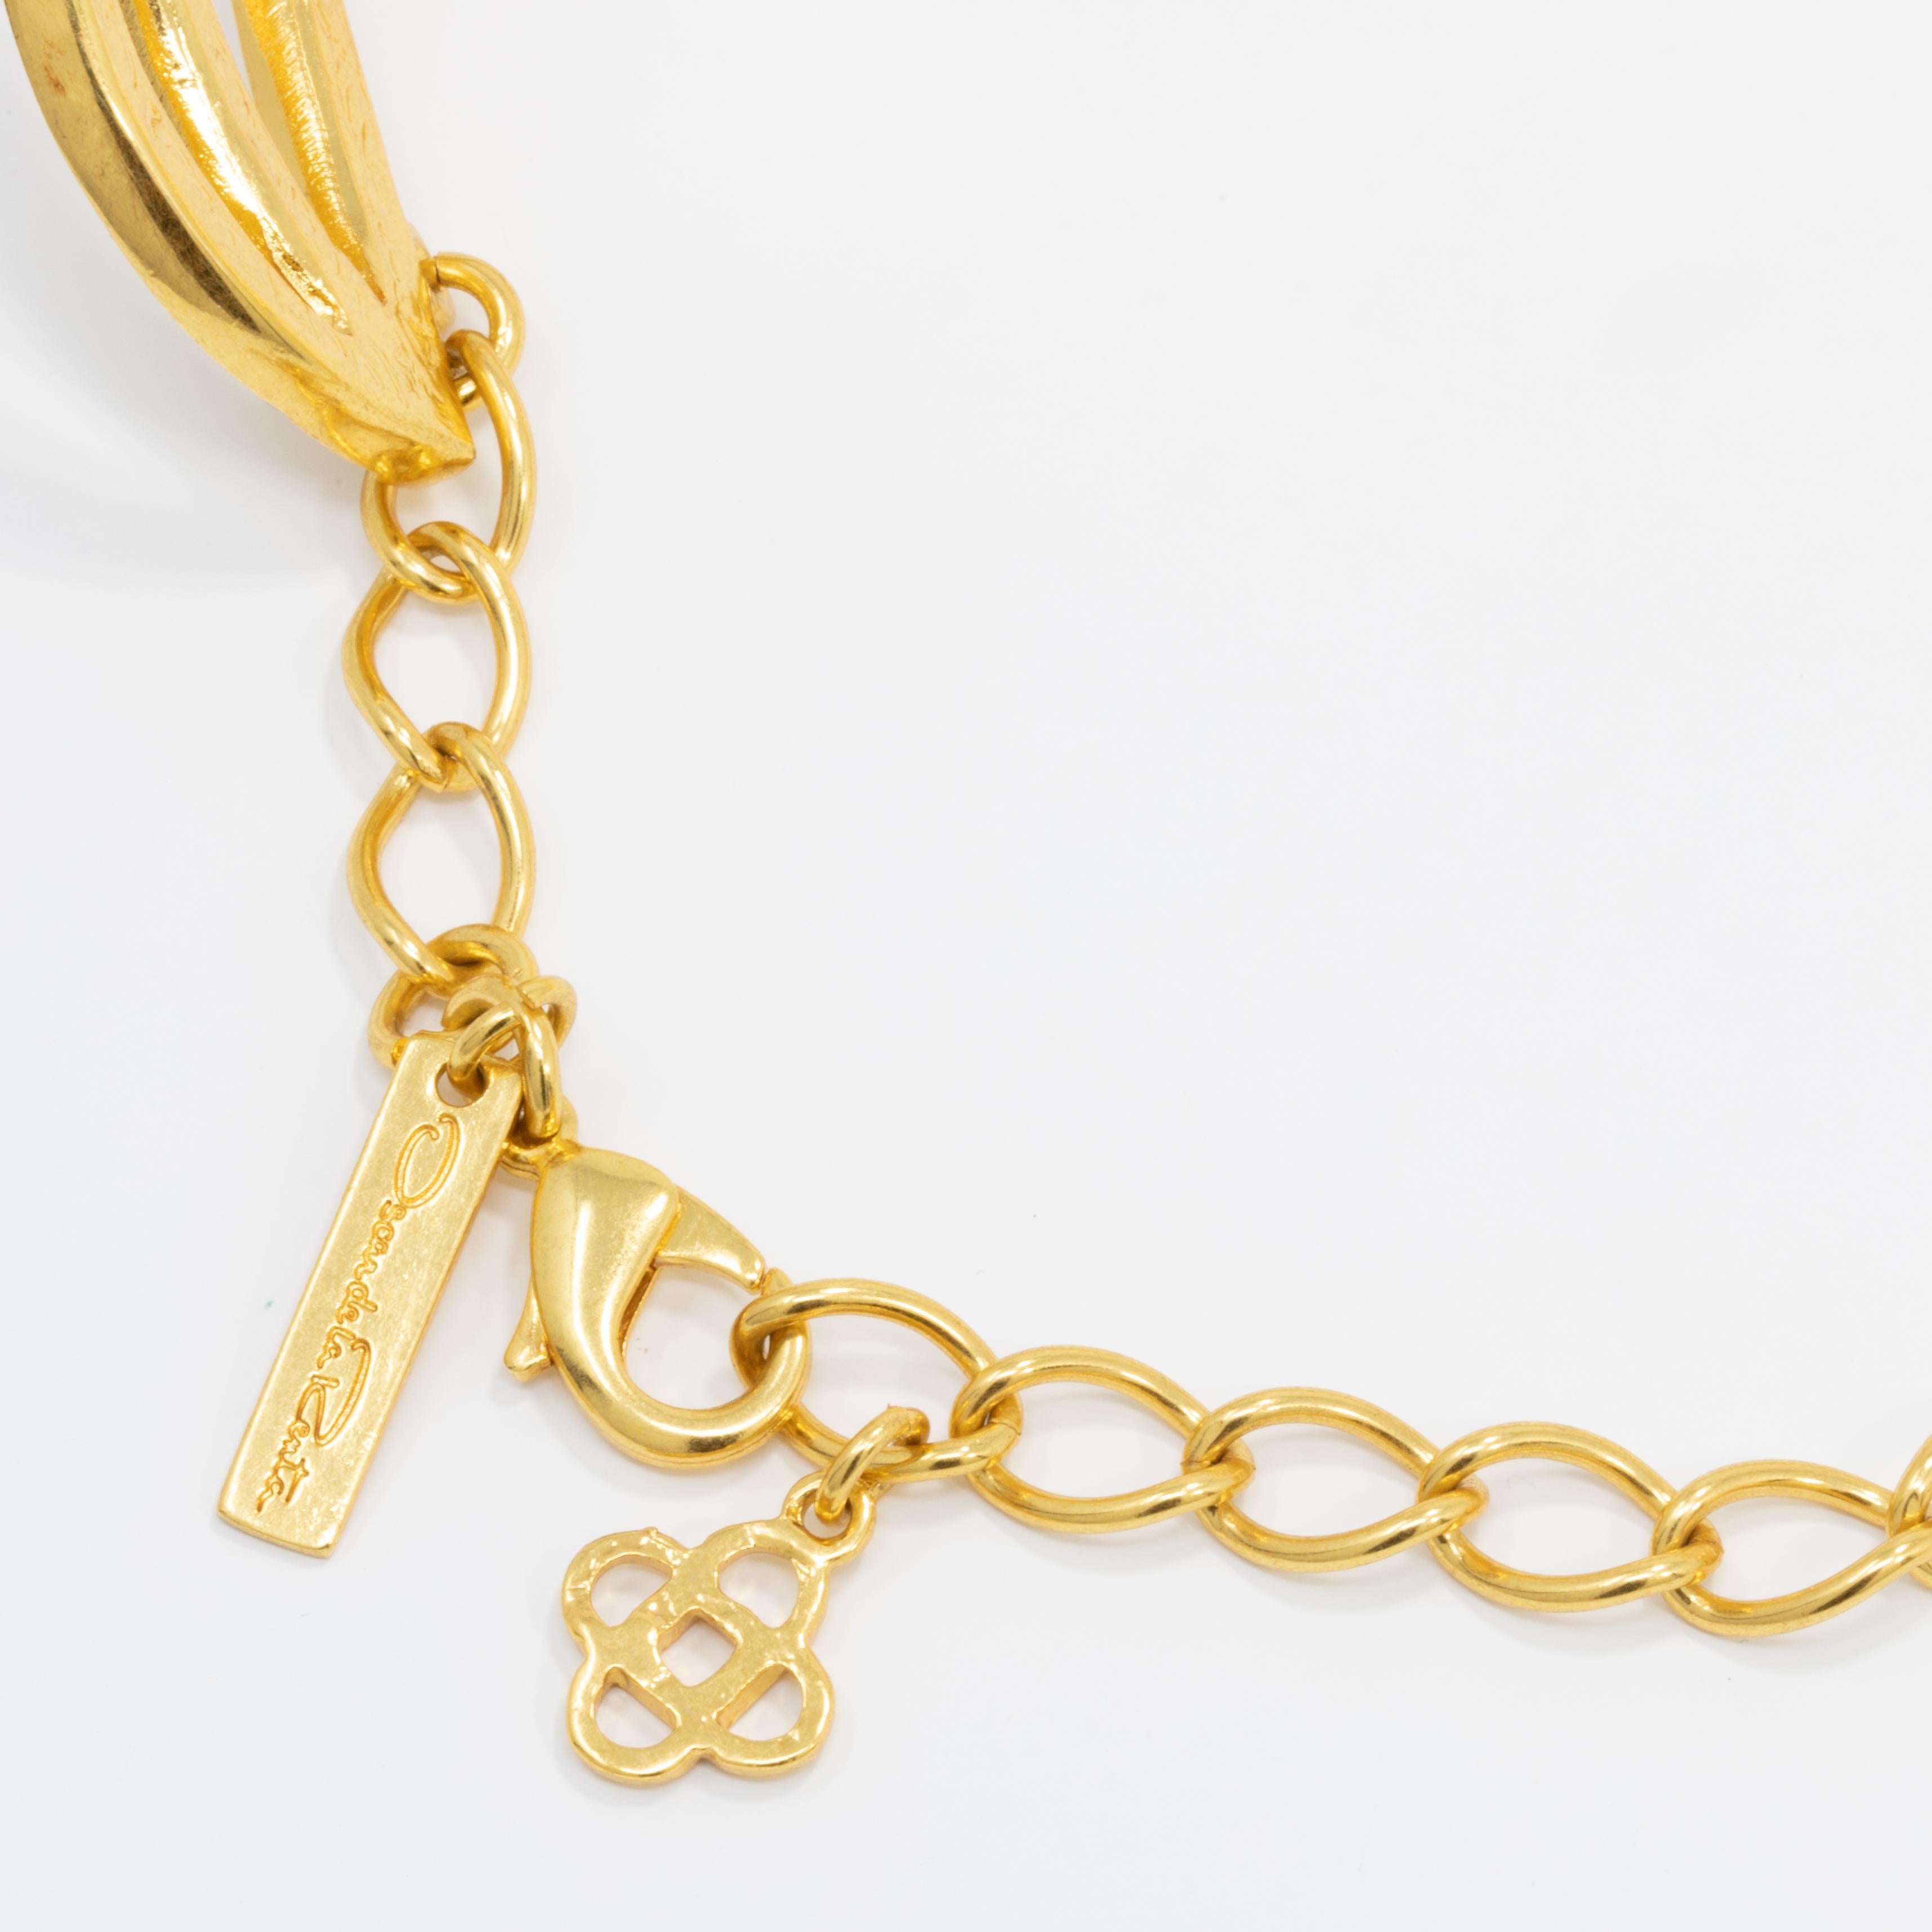 Contemporary Oscar de la Renta Gold Collar Necklace, Smoky Topaz Swarovski Crystals For Sale